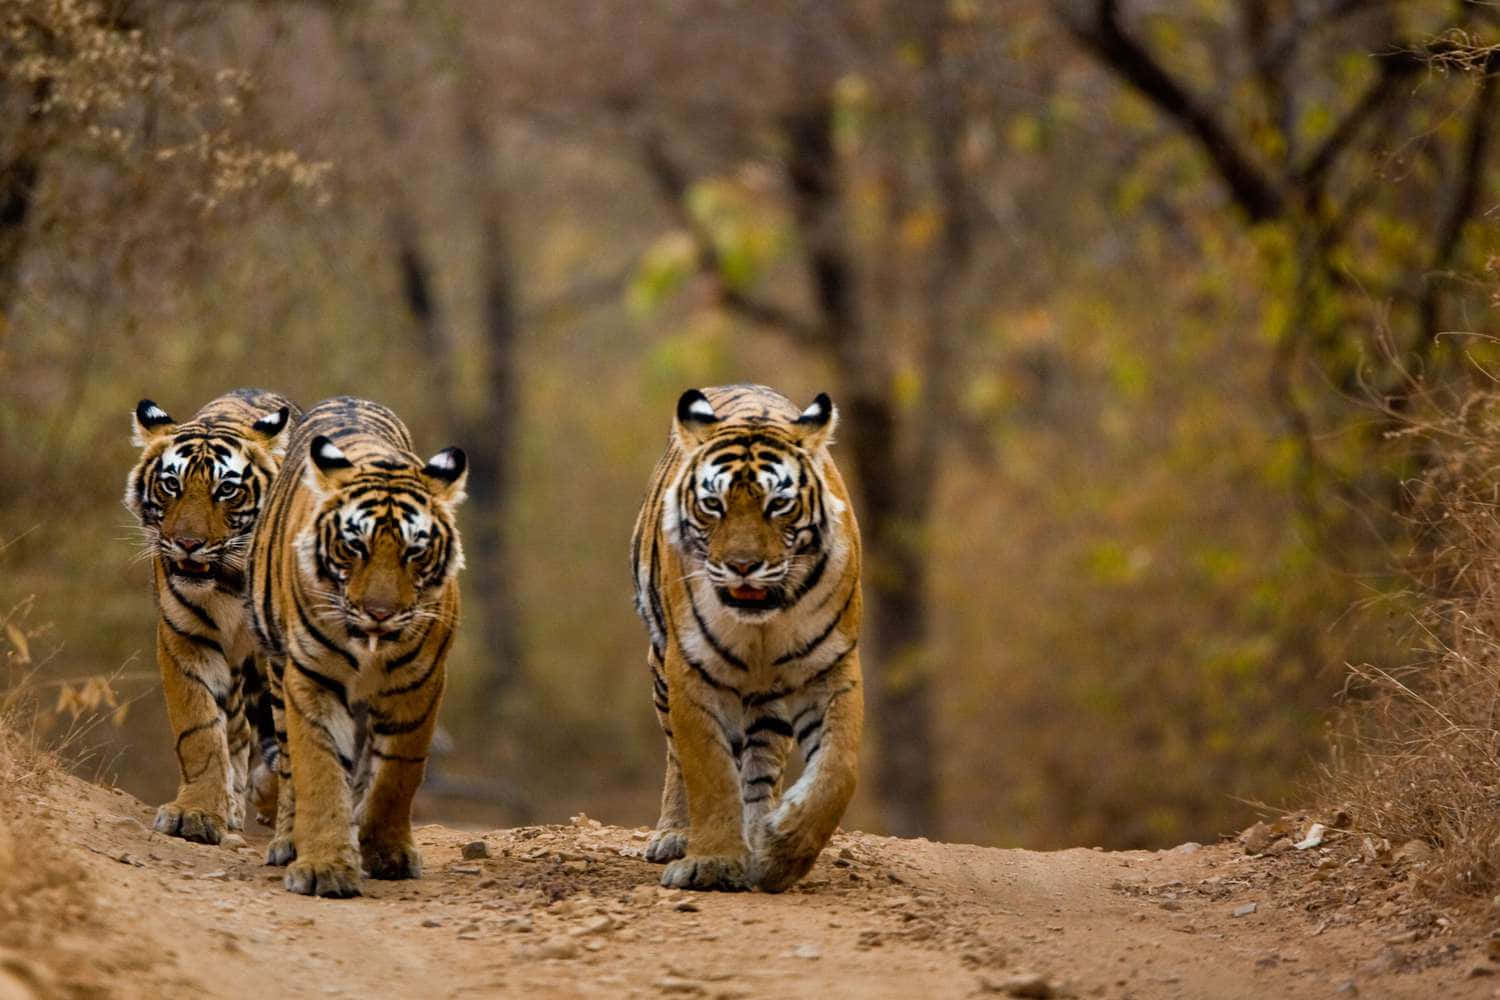 Ilmaestoso E Impressionante Tigre Del Bengala